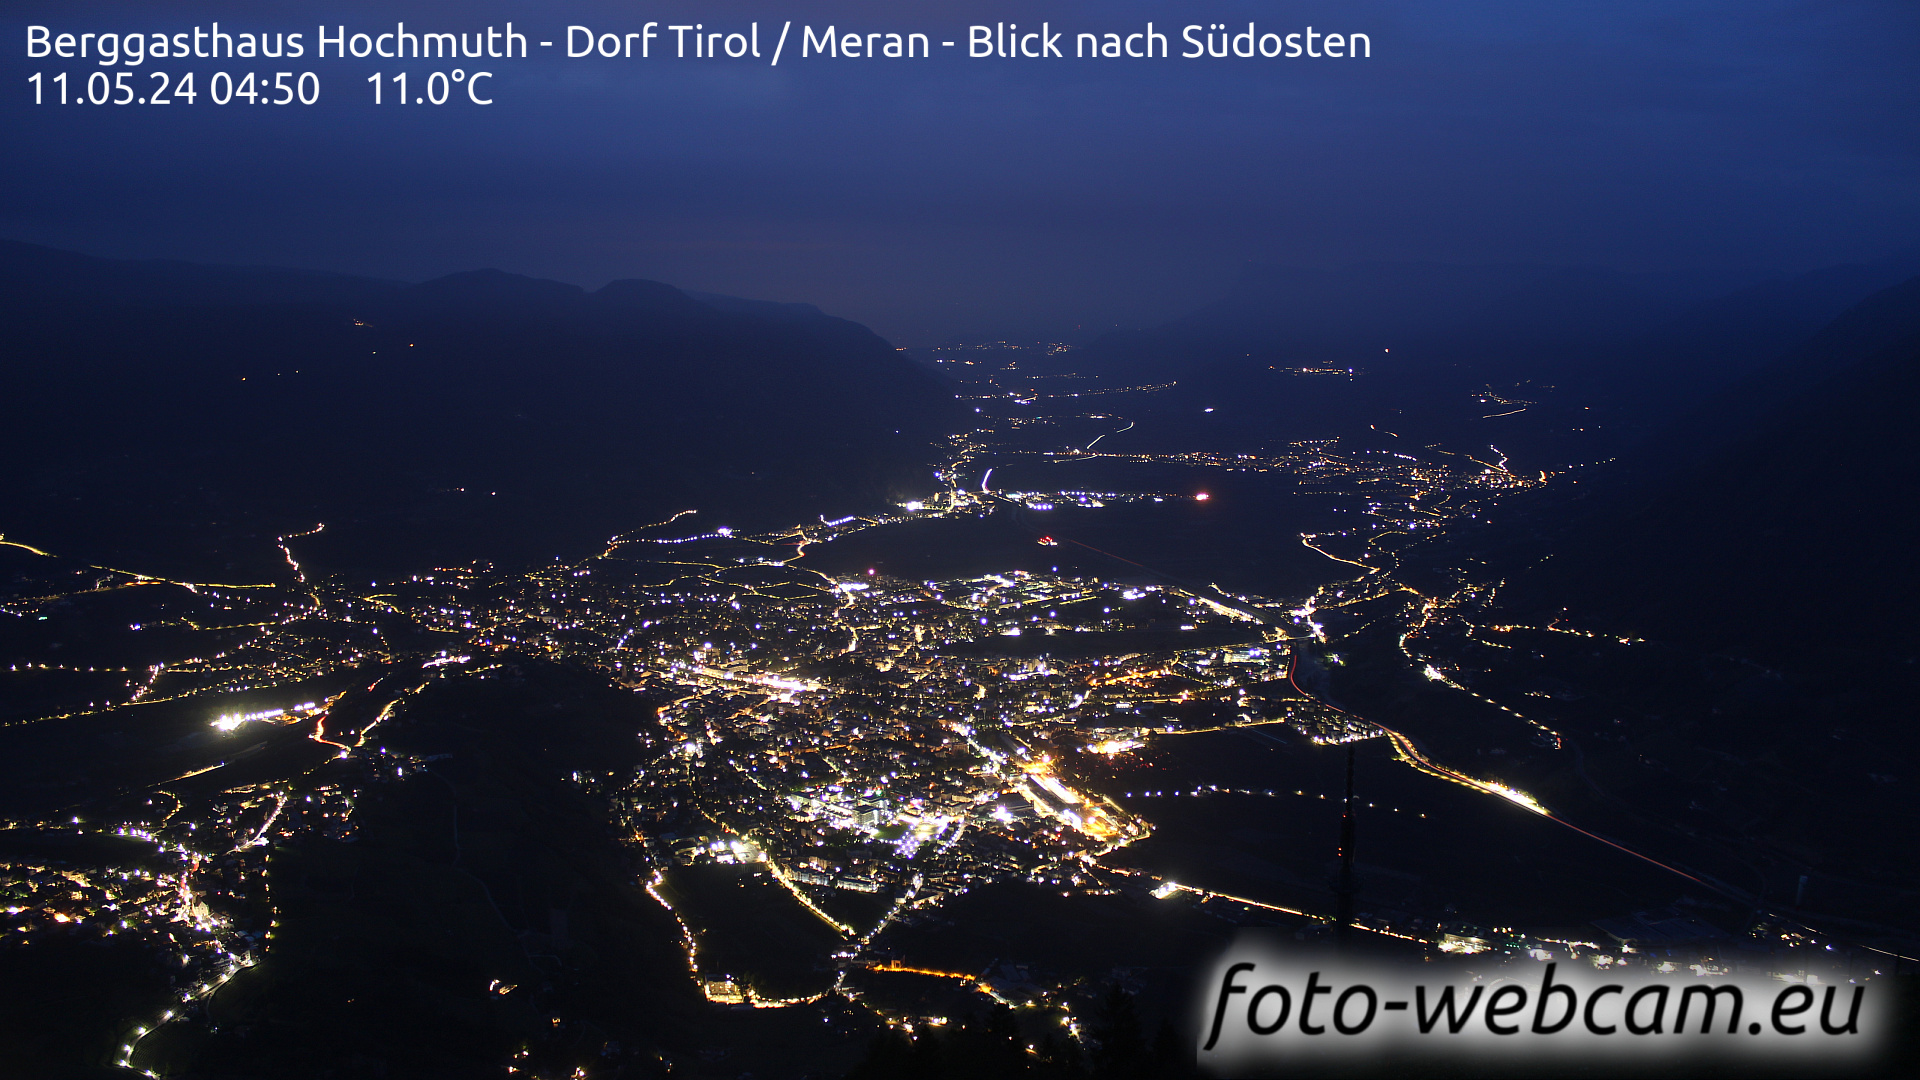 Tirol Wed. 04:56